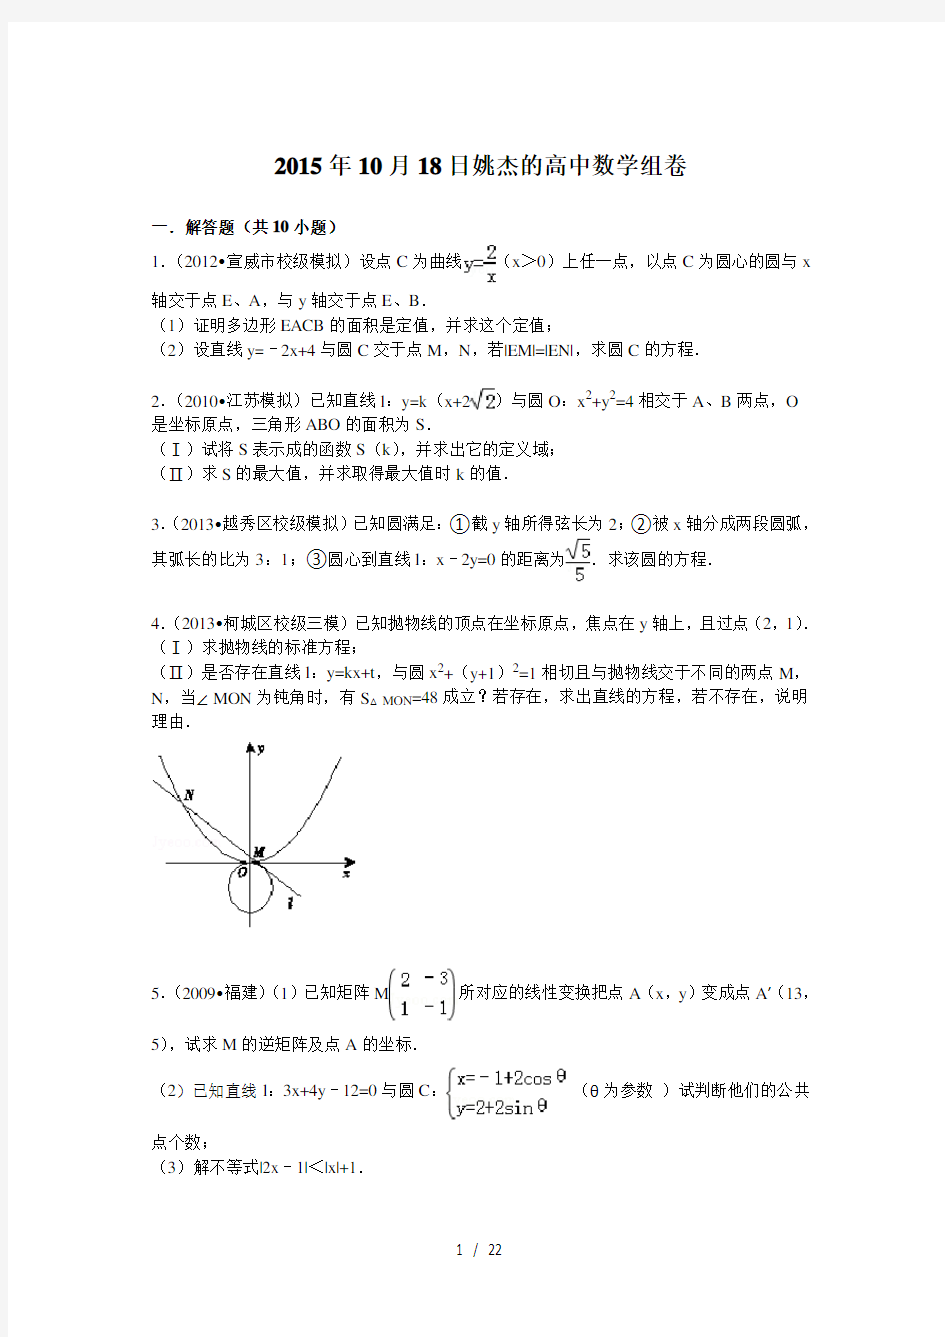 高中数学经典高考难题集锦(解析版)